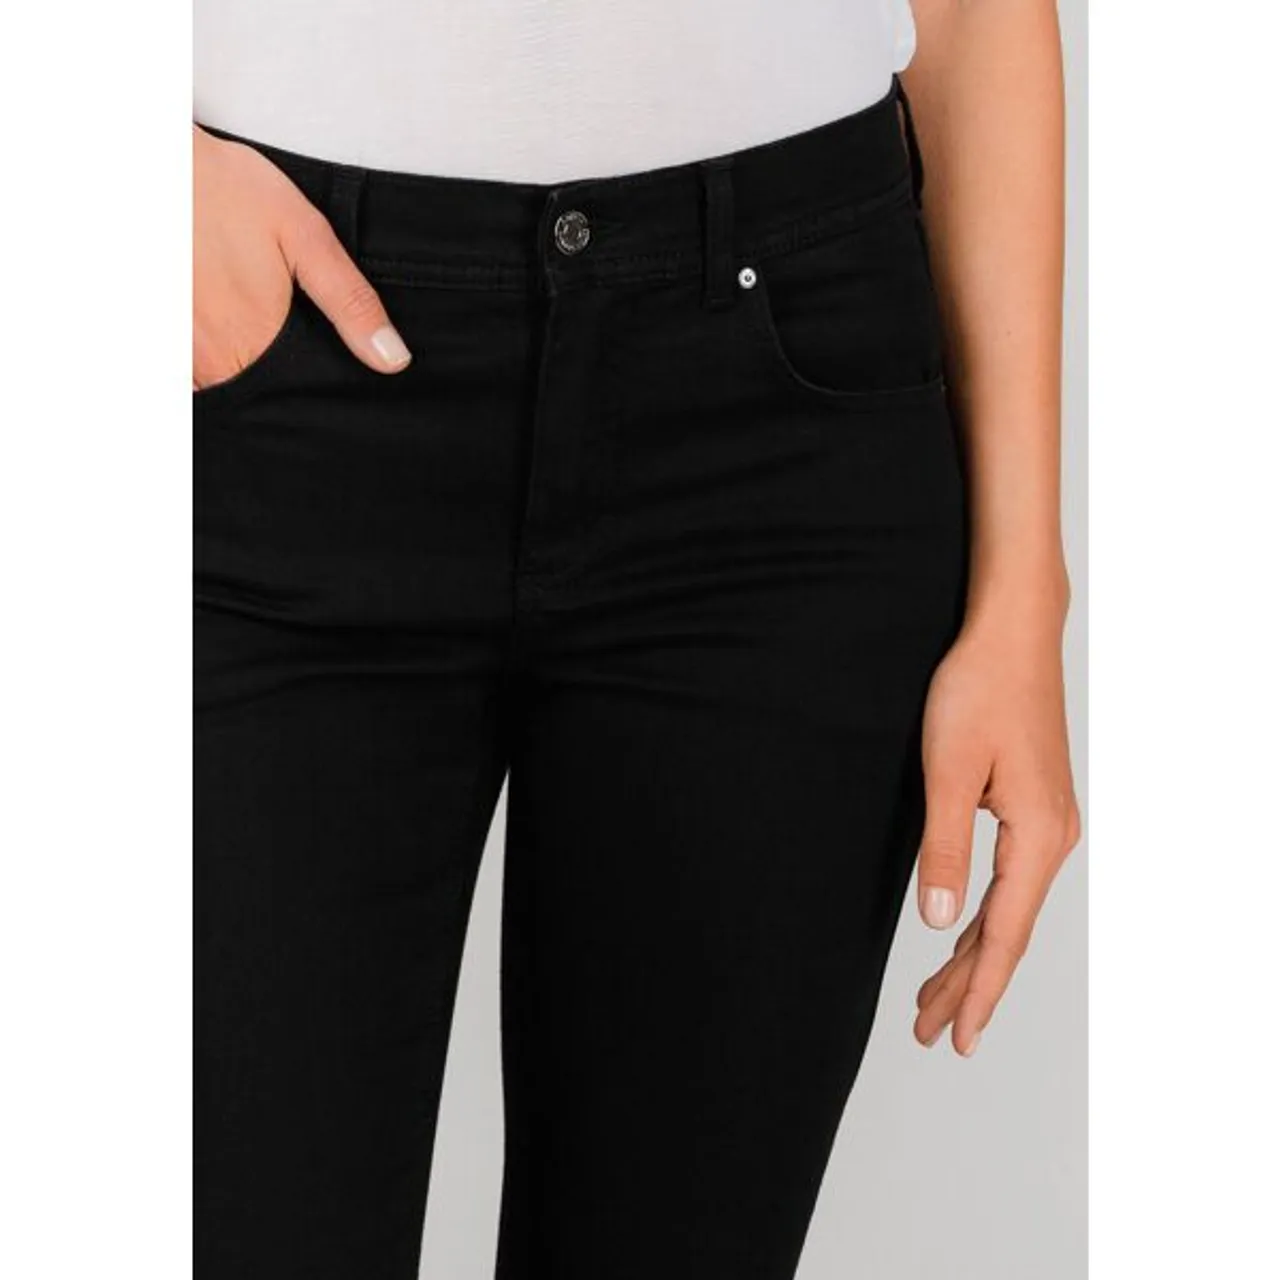 Straight-Jeans ANGELS "ORNELLA" Gr. 36, N-Gr, schwarz (black) Damen Jeans Röhrenjeans